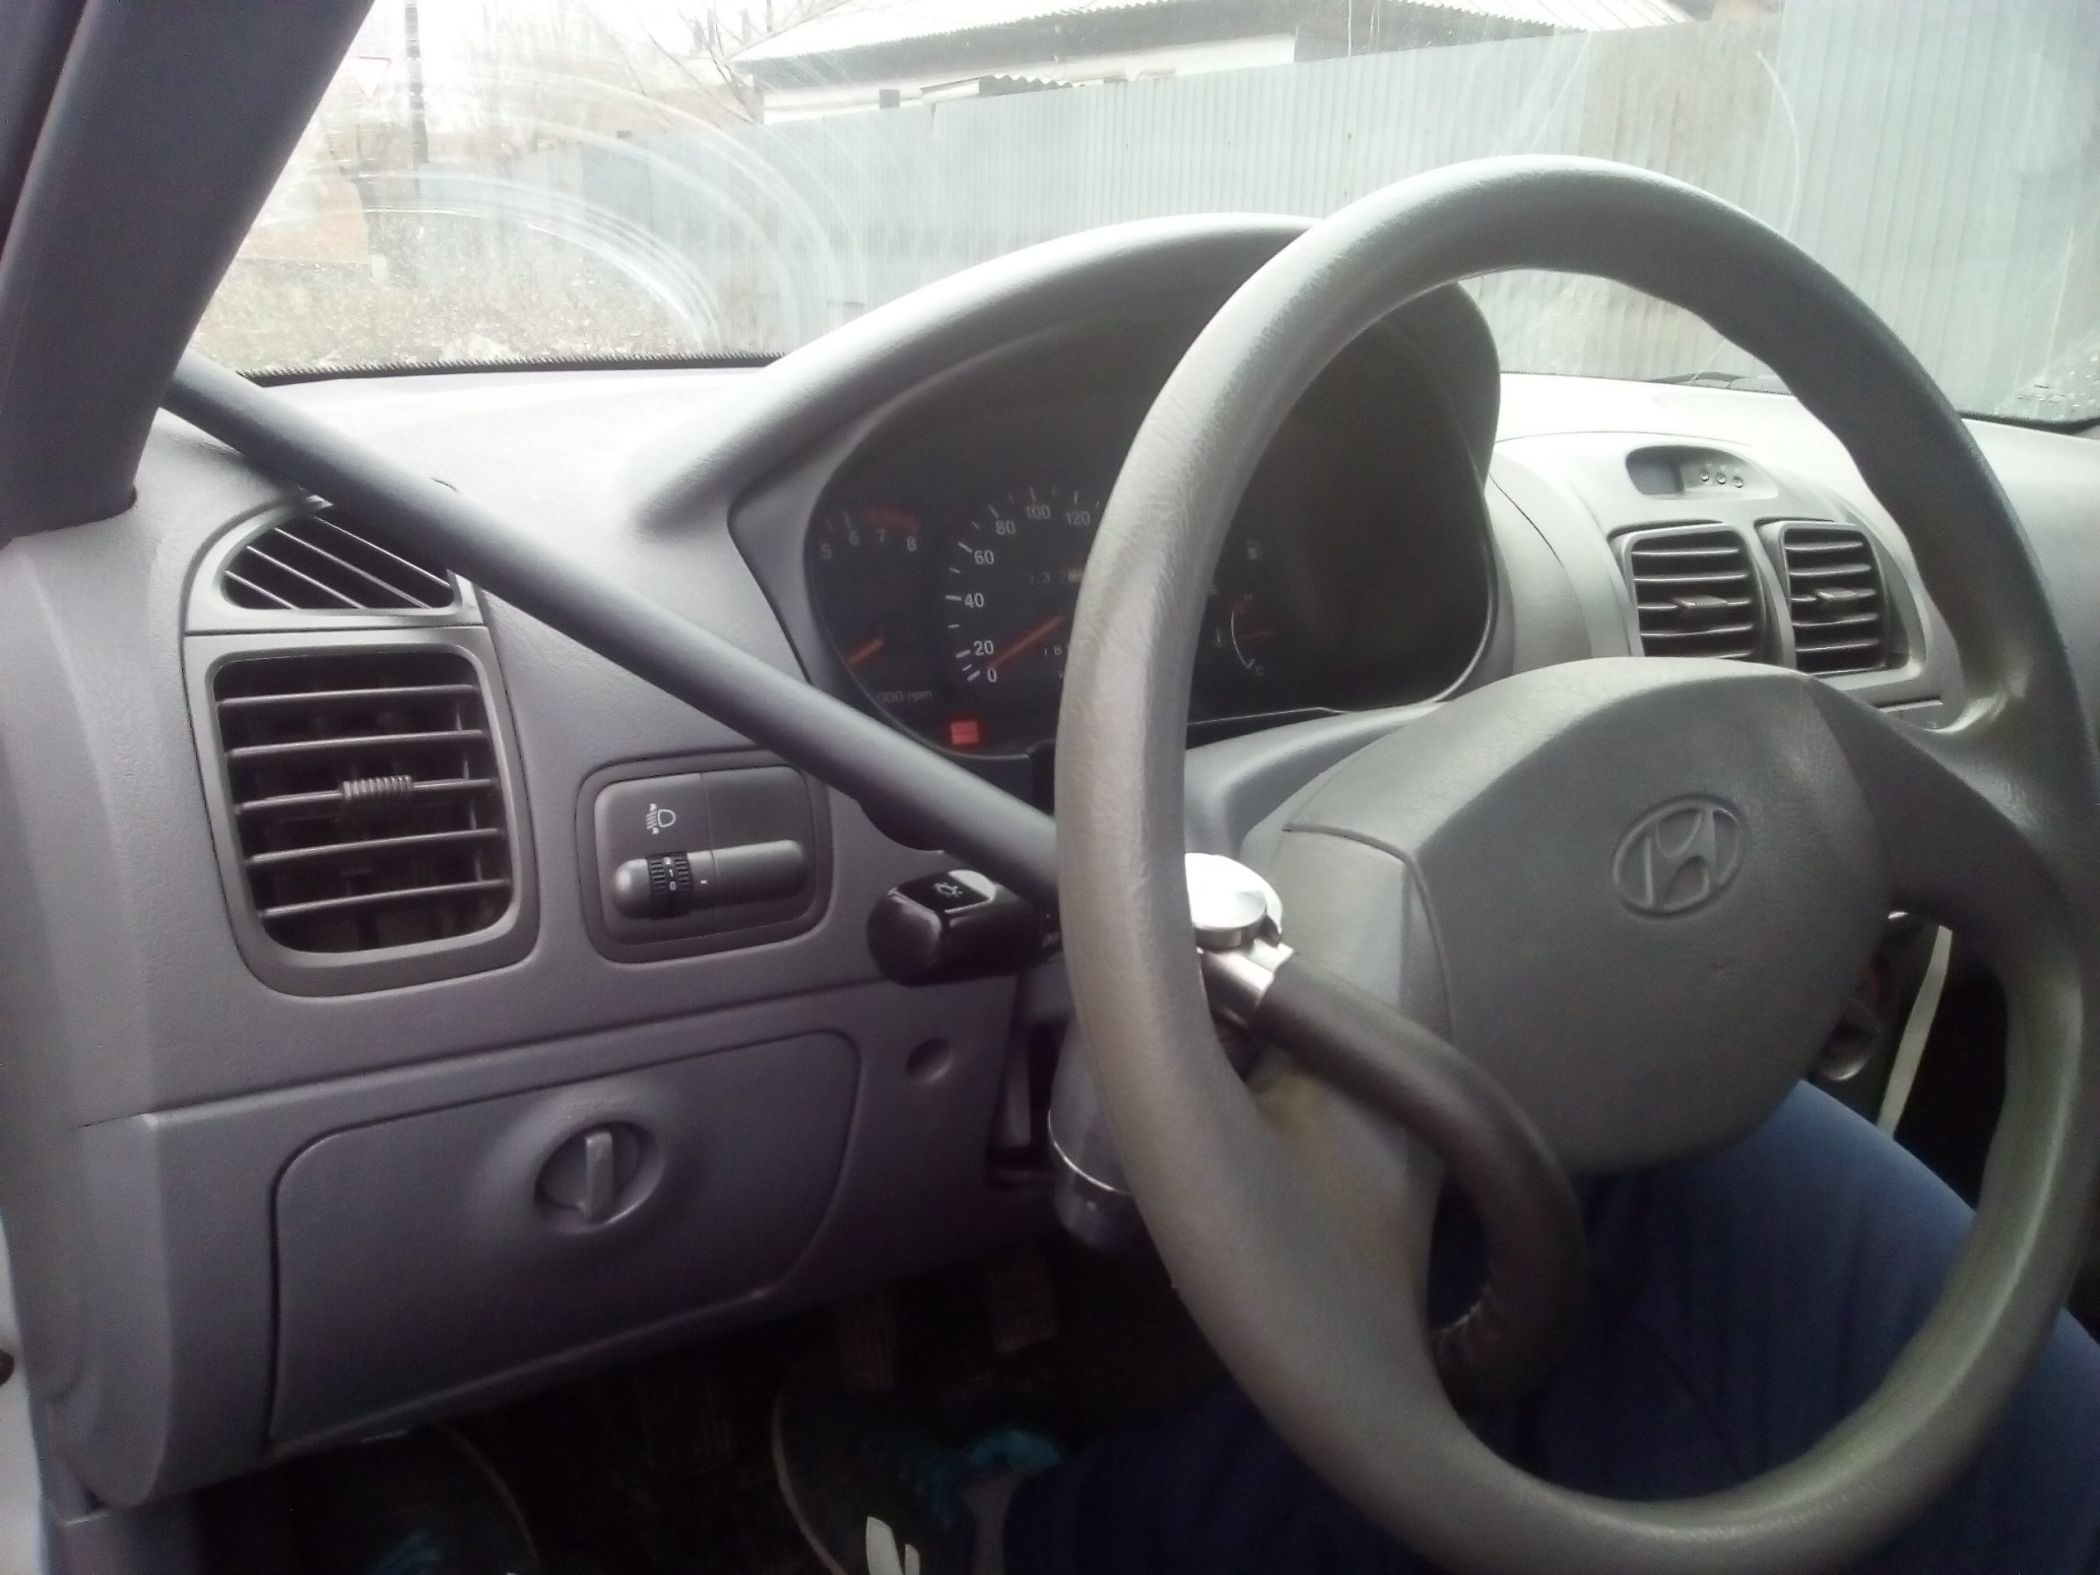 Блокиратор руля Питон установленный на автомобиле Hyundai Accent